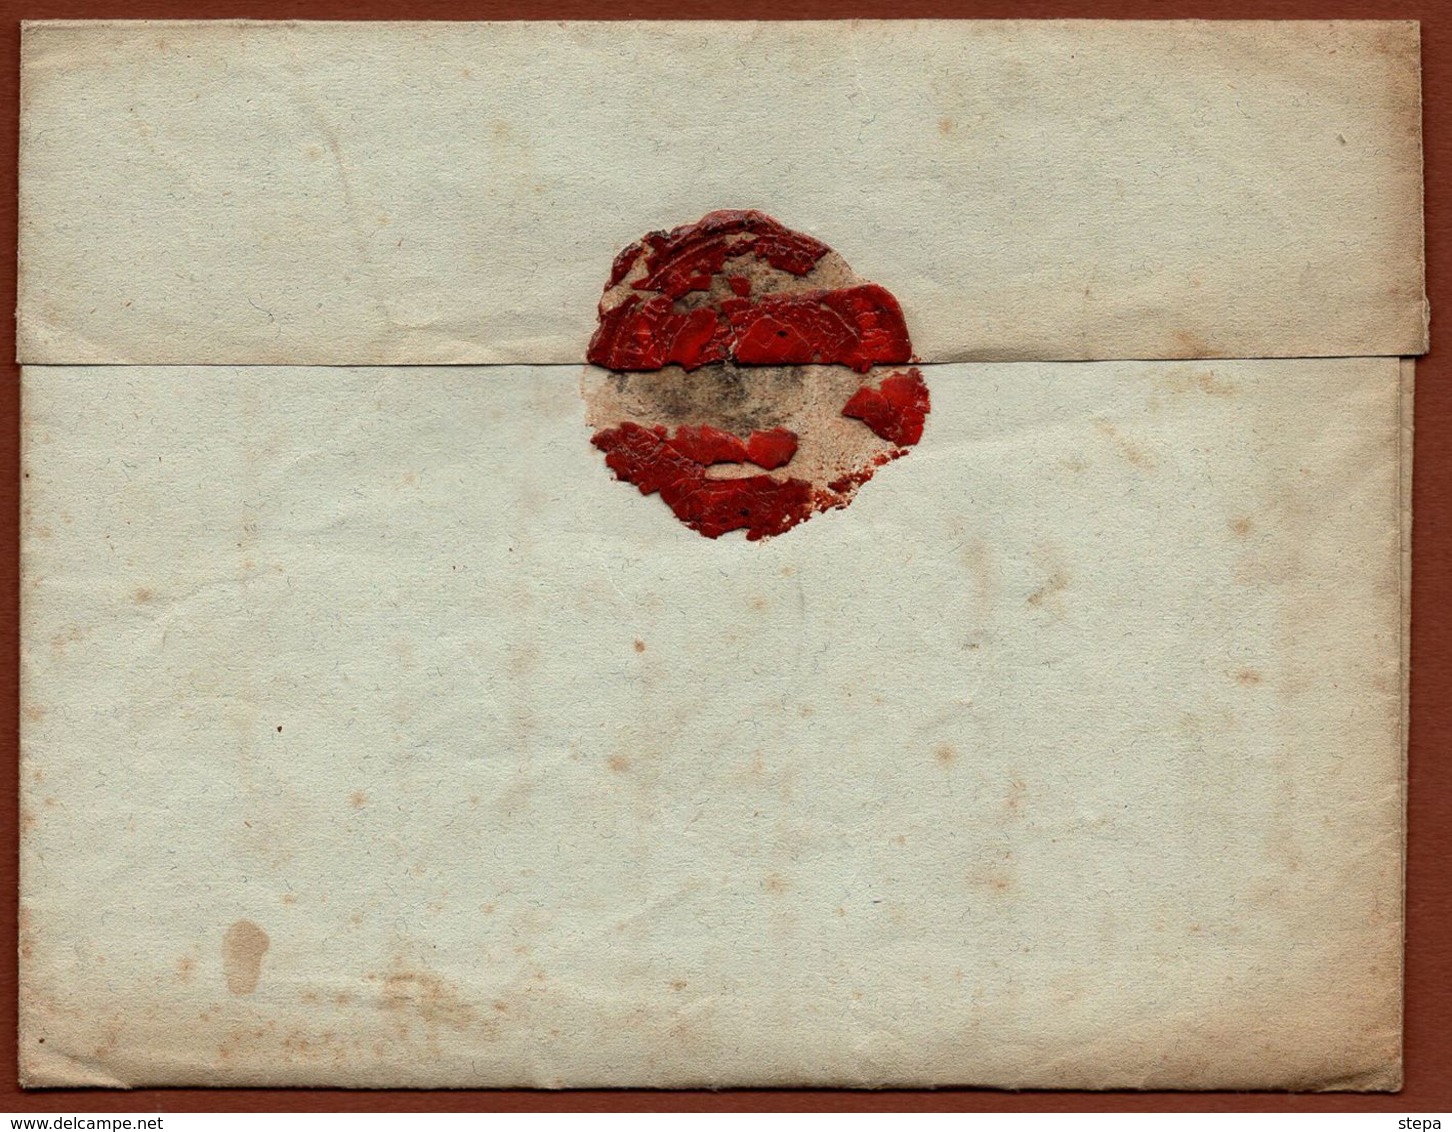 Serbia telegram of 1866 - seal